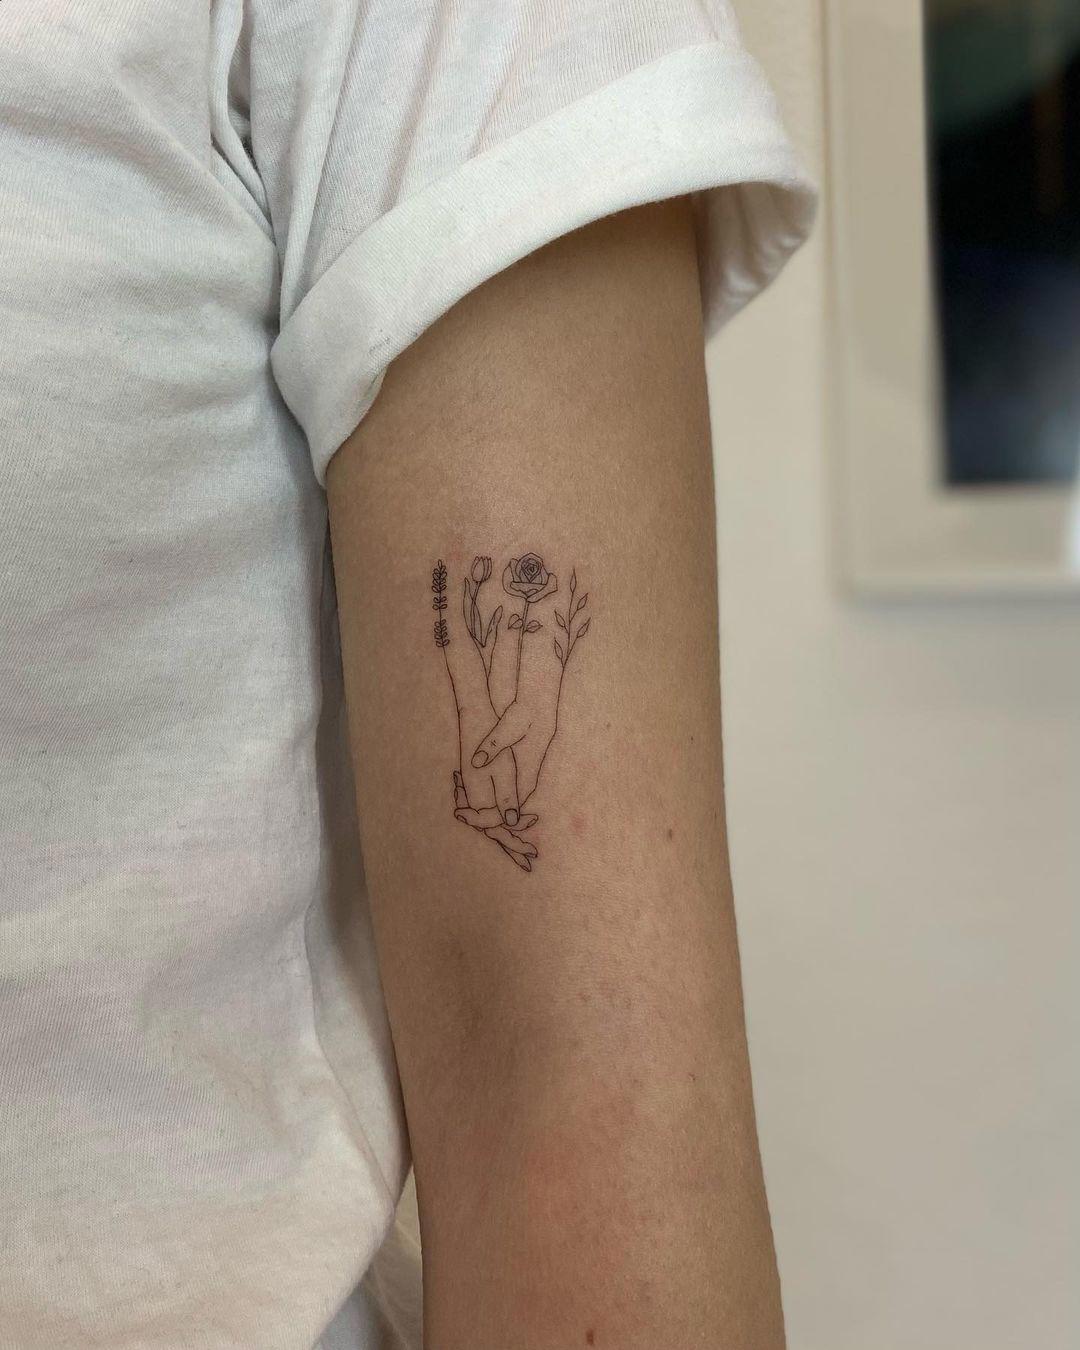 Tatuaje de flores y manos dadas